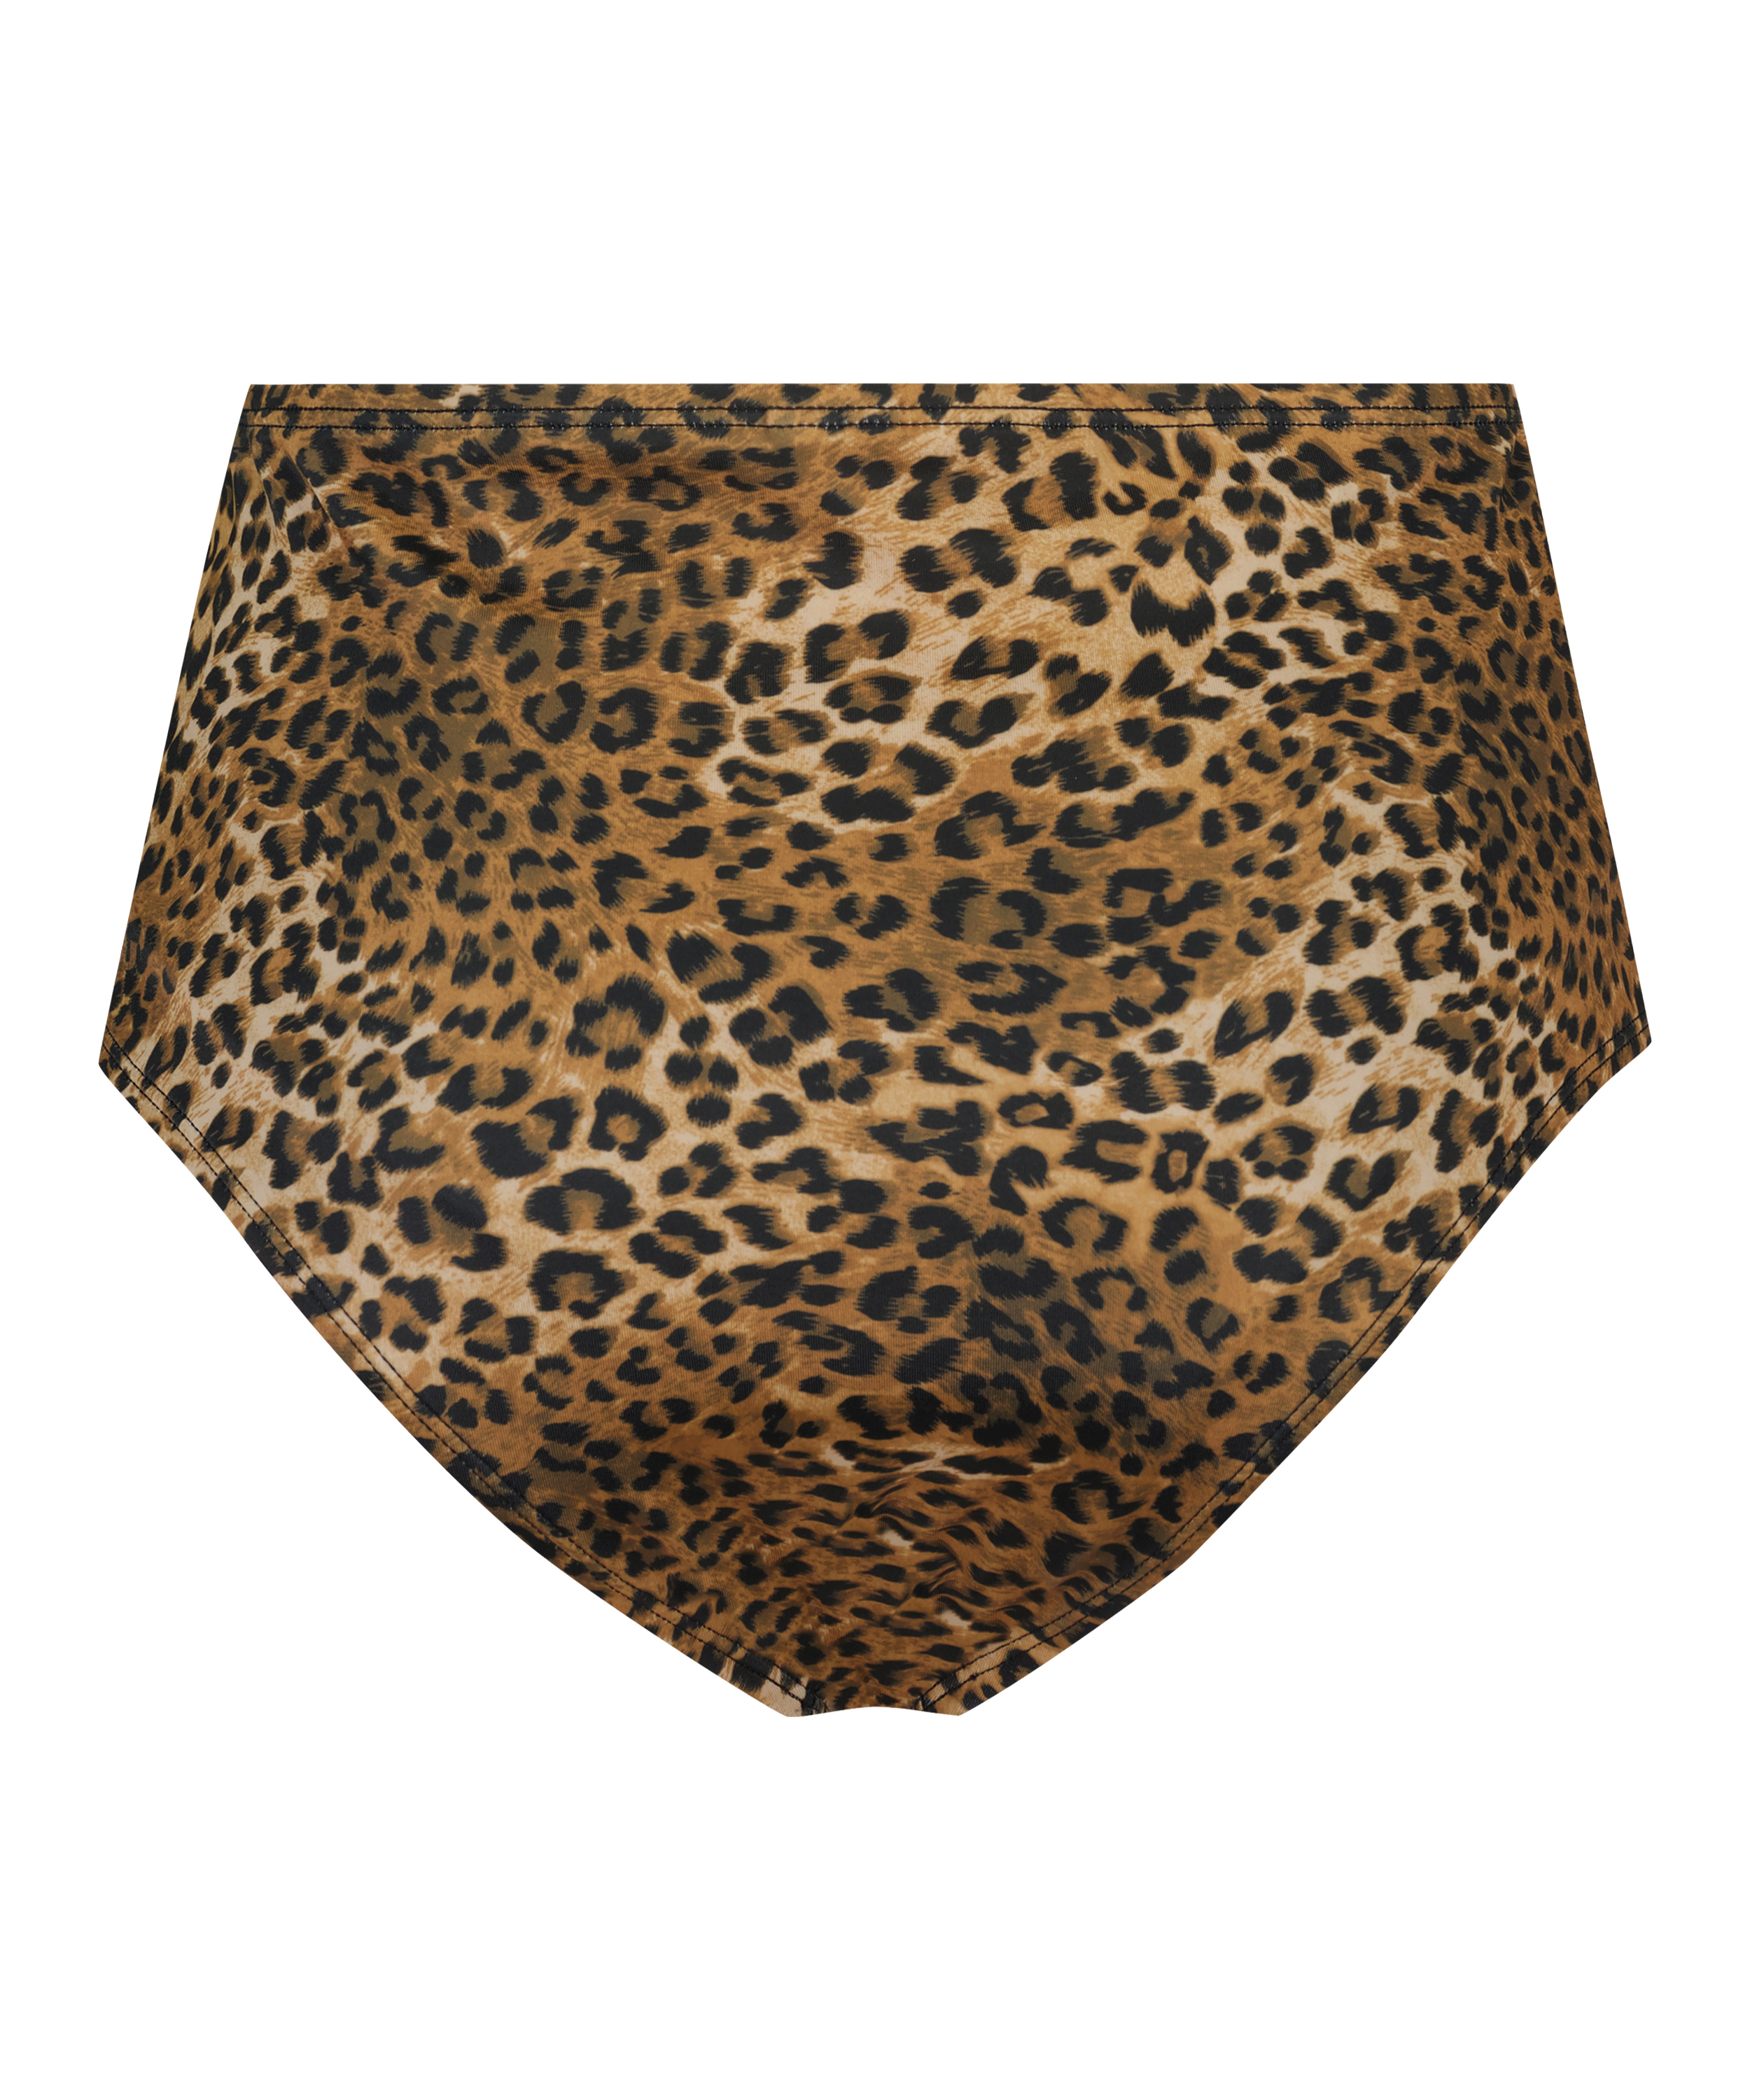 Cheeky high leg Leopard bikini bottoms, Brown, main